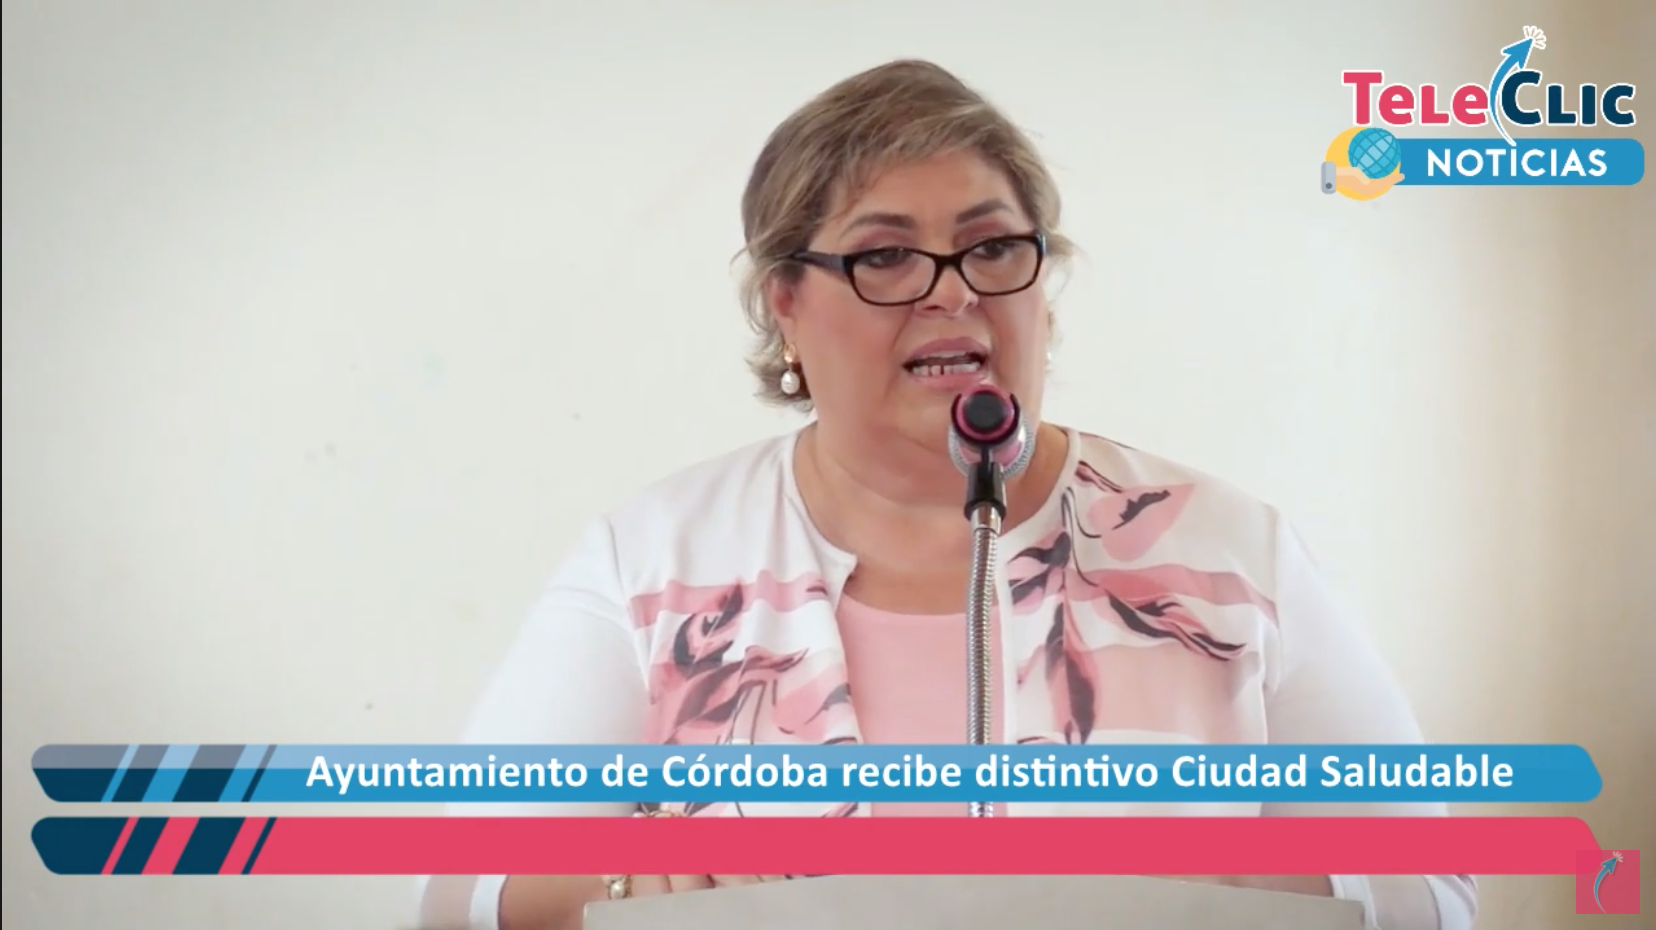 Leticia López, edil de Córdoba, Veracruz, recibió el distintivo Ciudad Saludable; por la ejecución de políticas públicas integrales en la contingencia sanitaria.